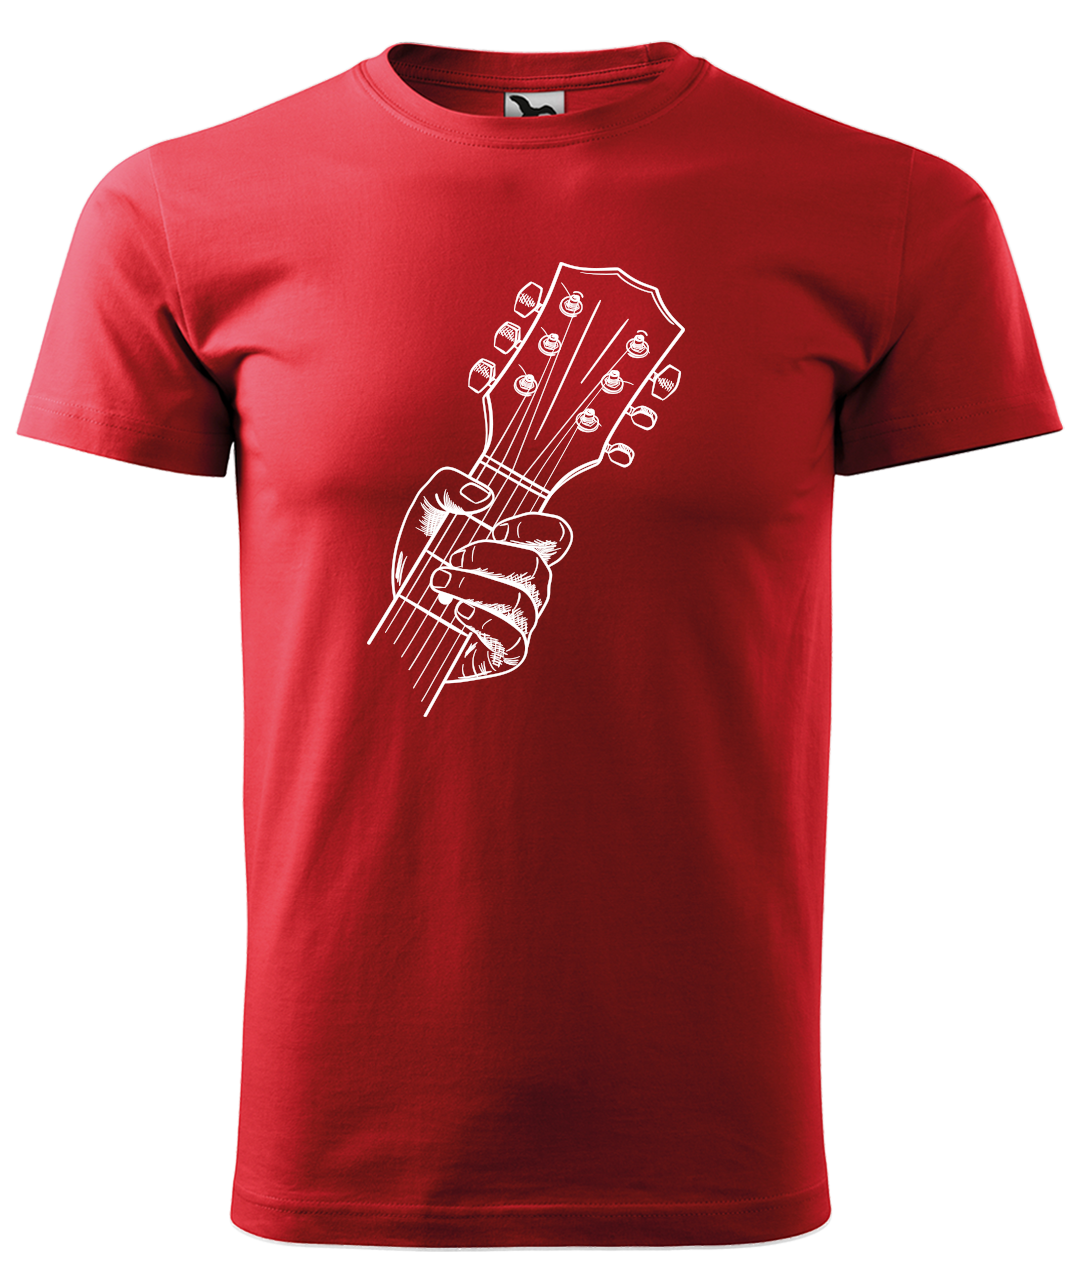 Dětské tričko s kytarou - Hlava kytary Velikost: 12 let / 158 cm, Barva: Červená (07)